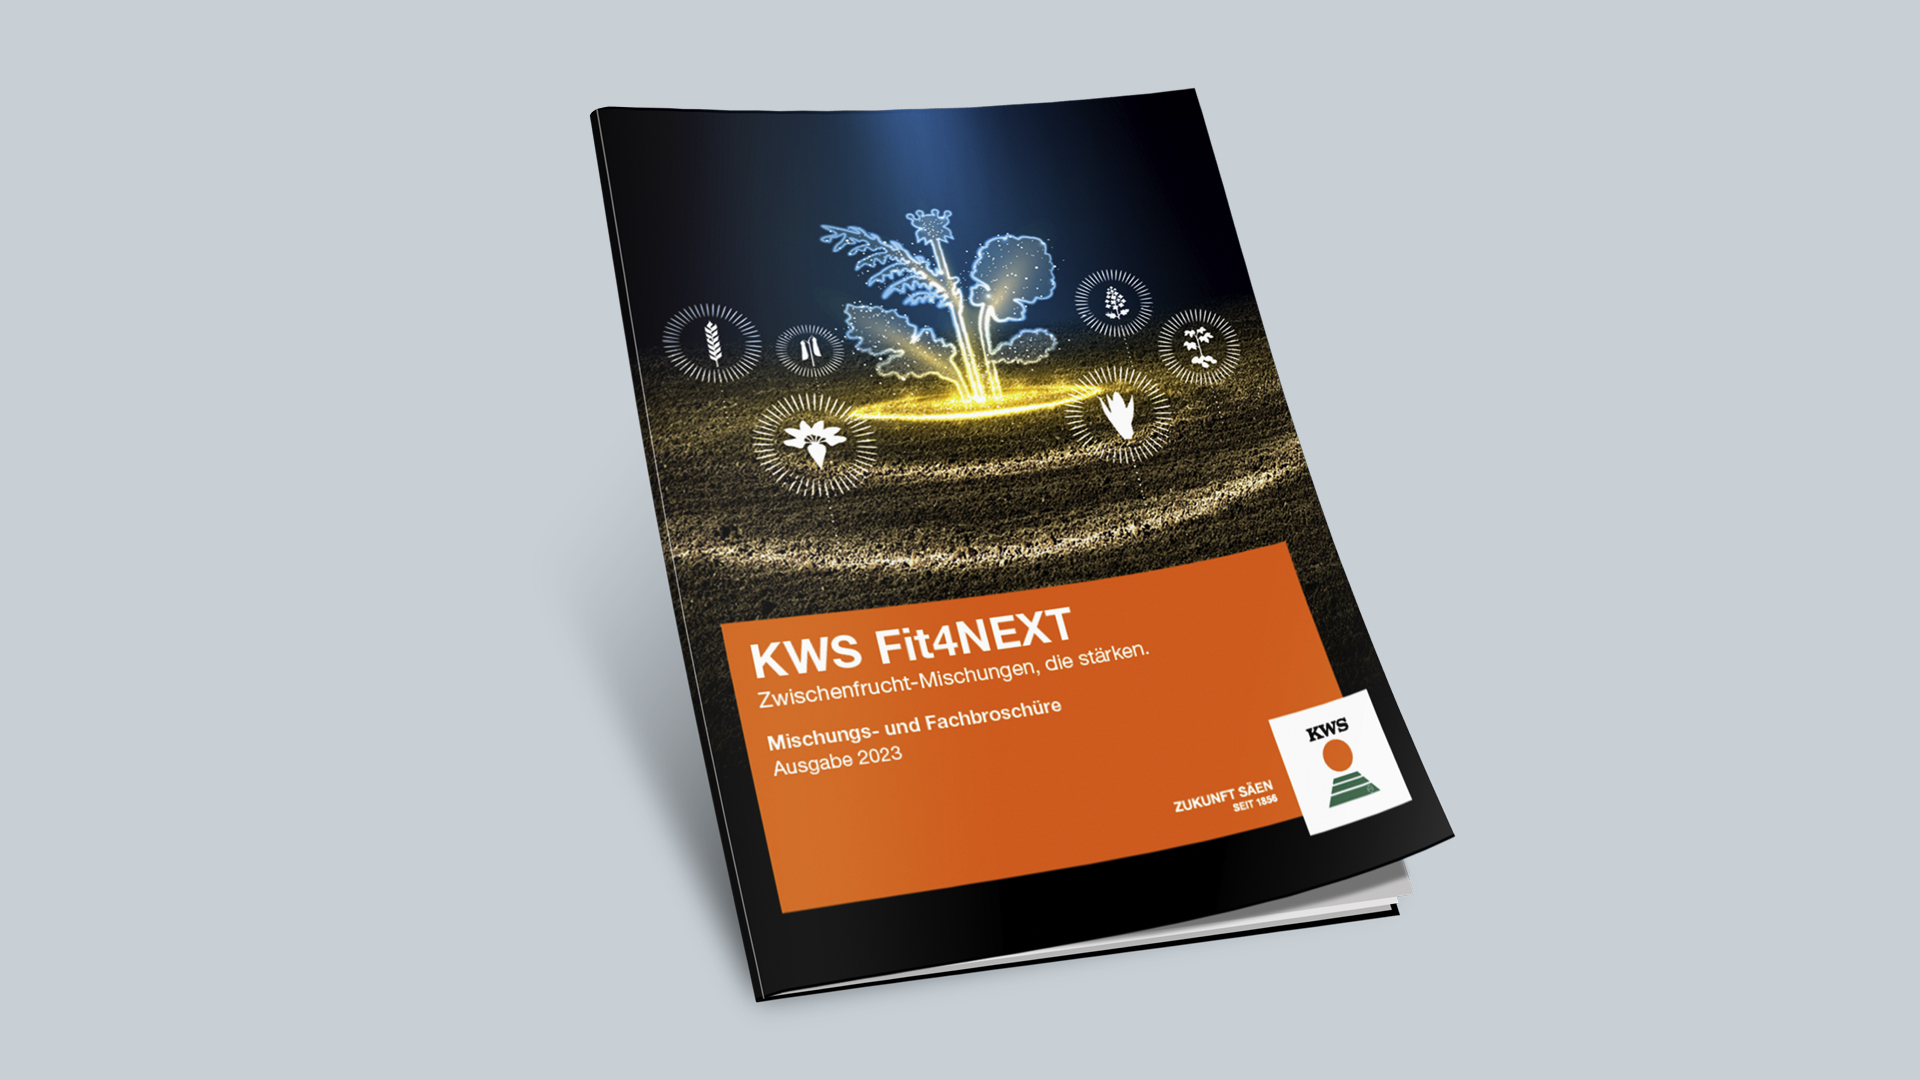 KWS FIT4NEXT Mischungs- und Fachbroschüre